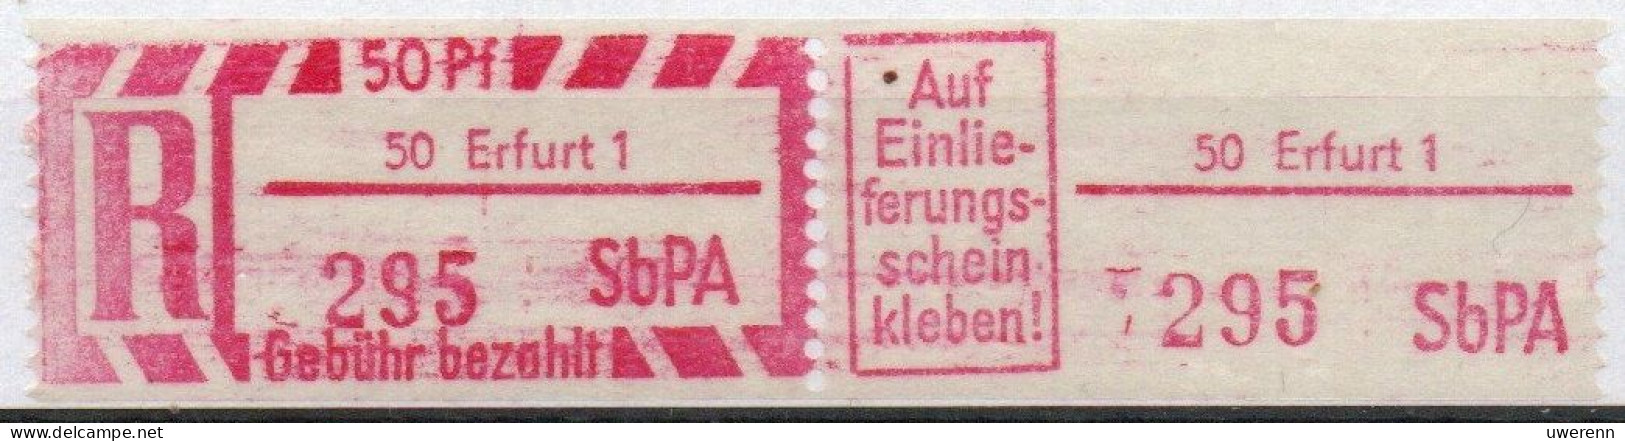 DDR Einschreibemarke Erfurt SbPA Postfrisch, EM2B-50-1II RU (a) Zh (Mi 2C) - Labels For Registered Mail